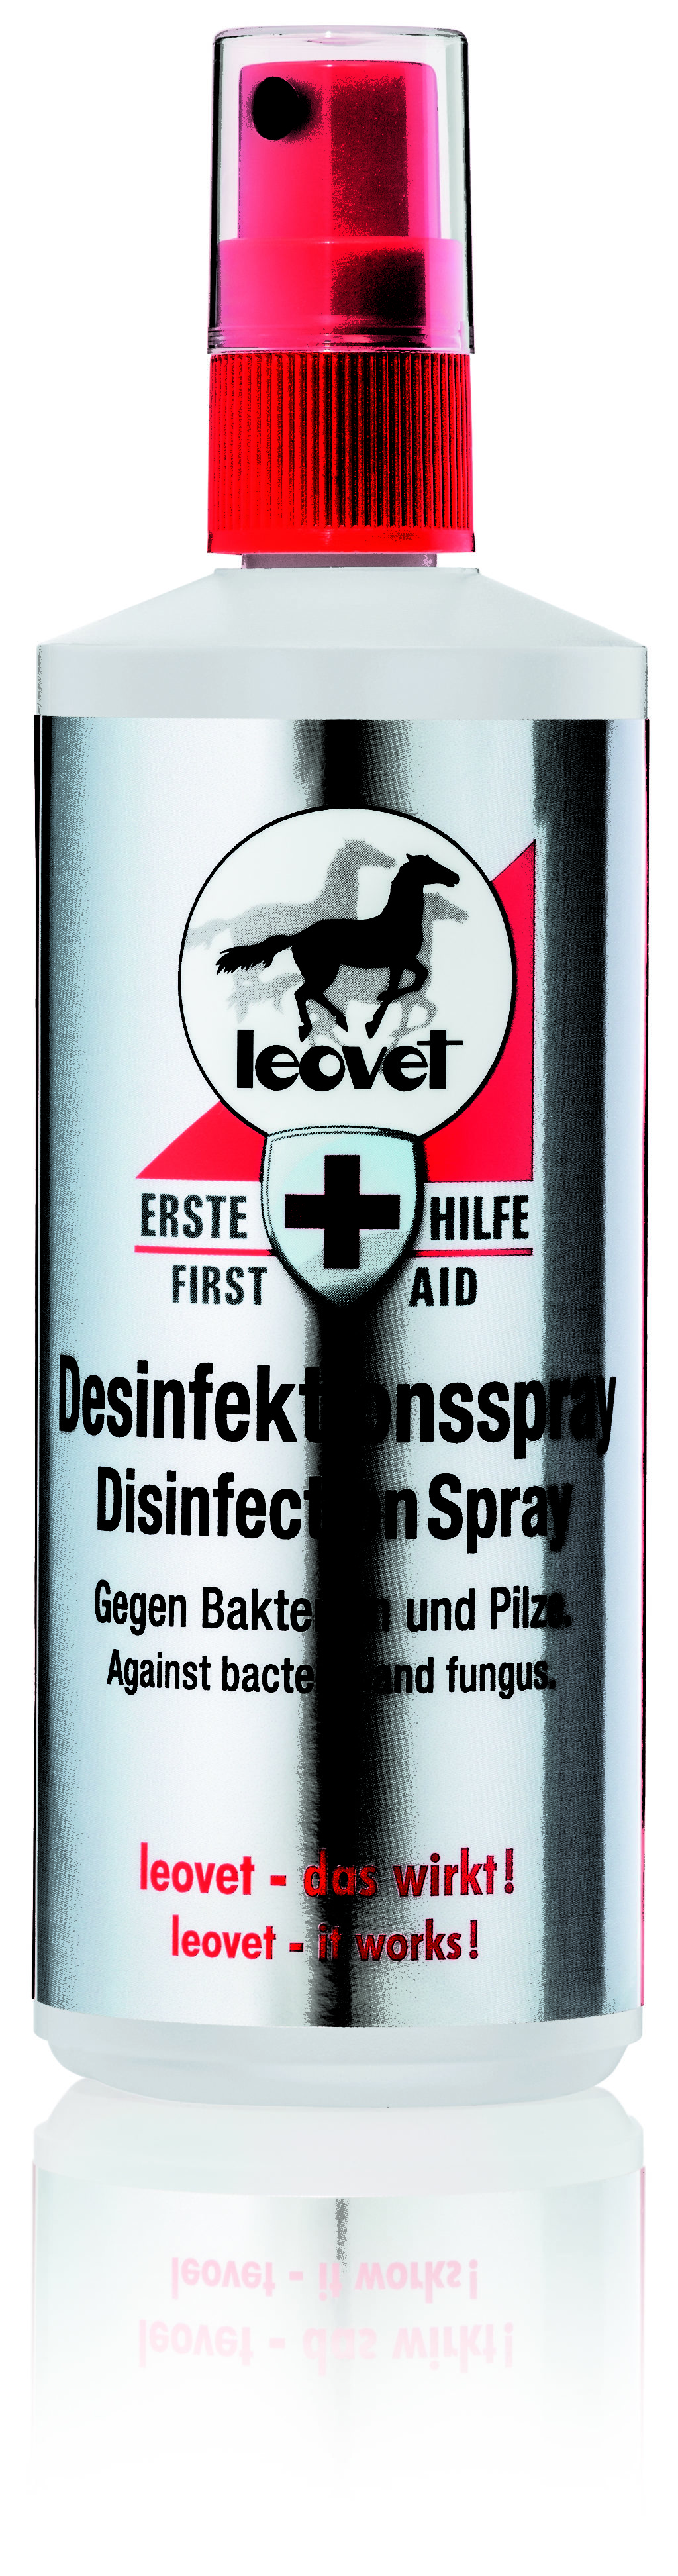 Leovet Disinfectant Spray 200ml